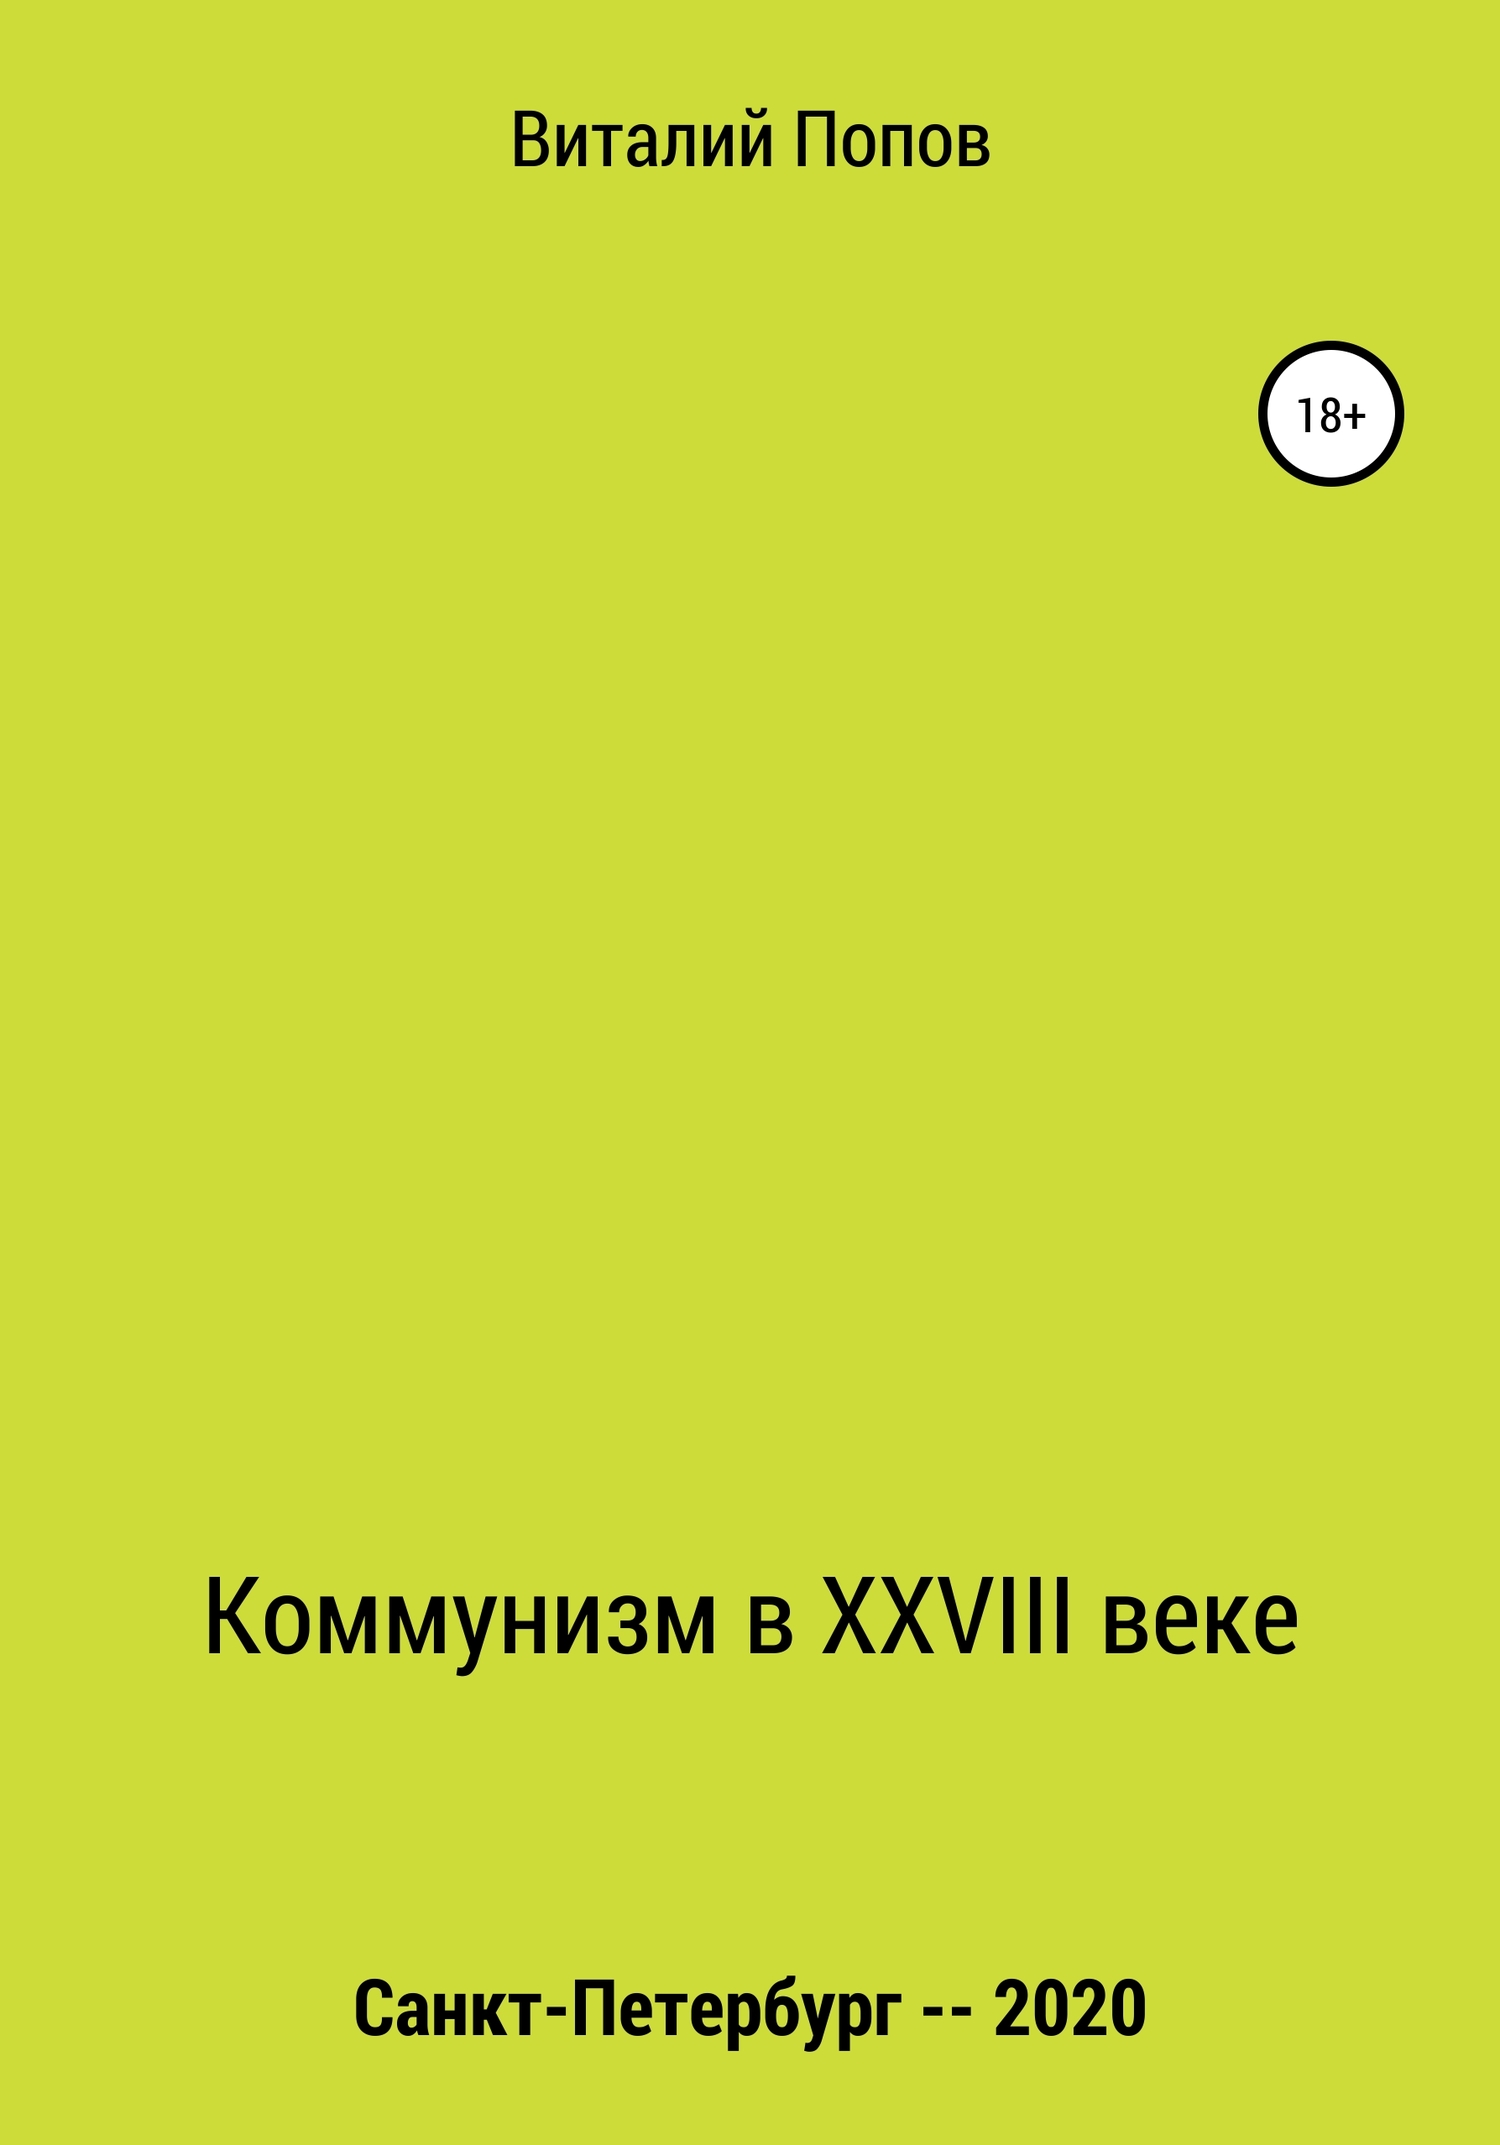 Коммунизм в XXVIII веке - Виталий Валерьевич Попов